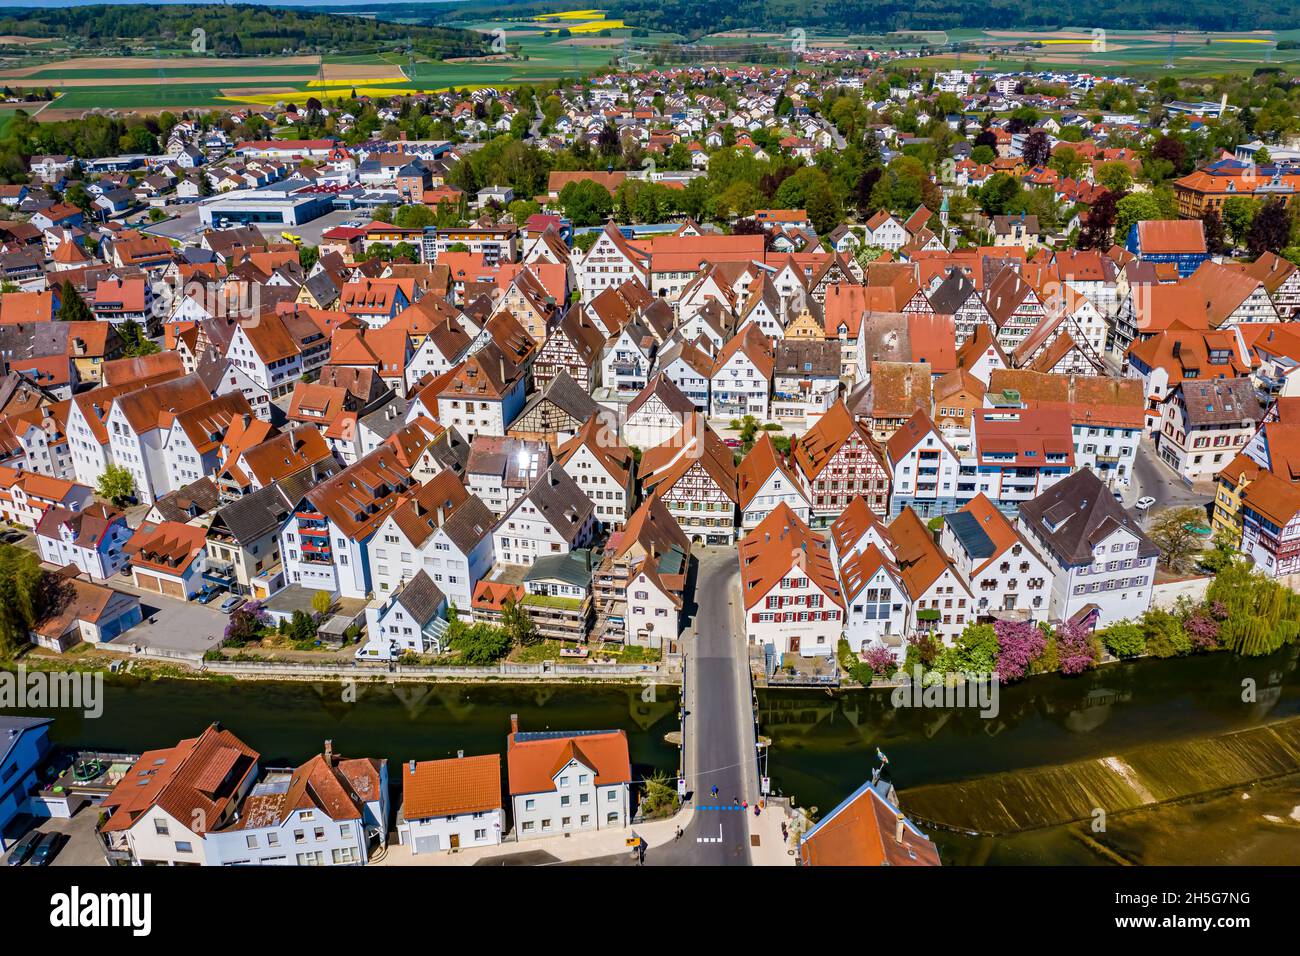 Riedlingen Luftbild | Die Stadt Riedlingen aus der Luft | vue aérienne de la ville allemande de Riedlingen Banque D'Images